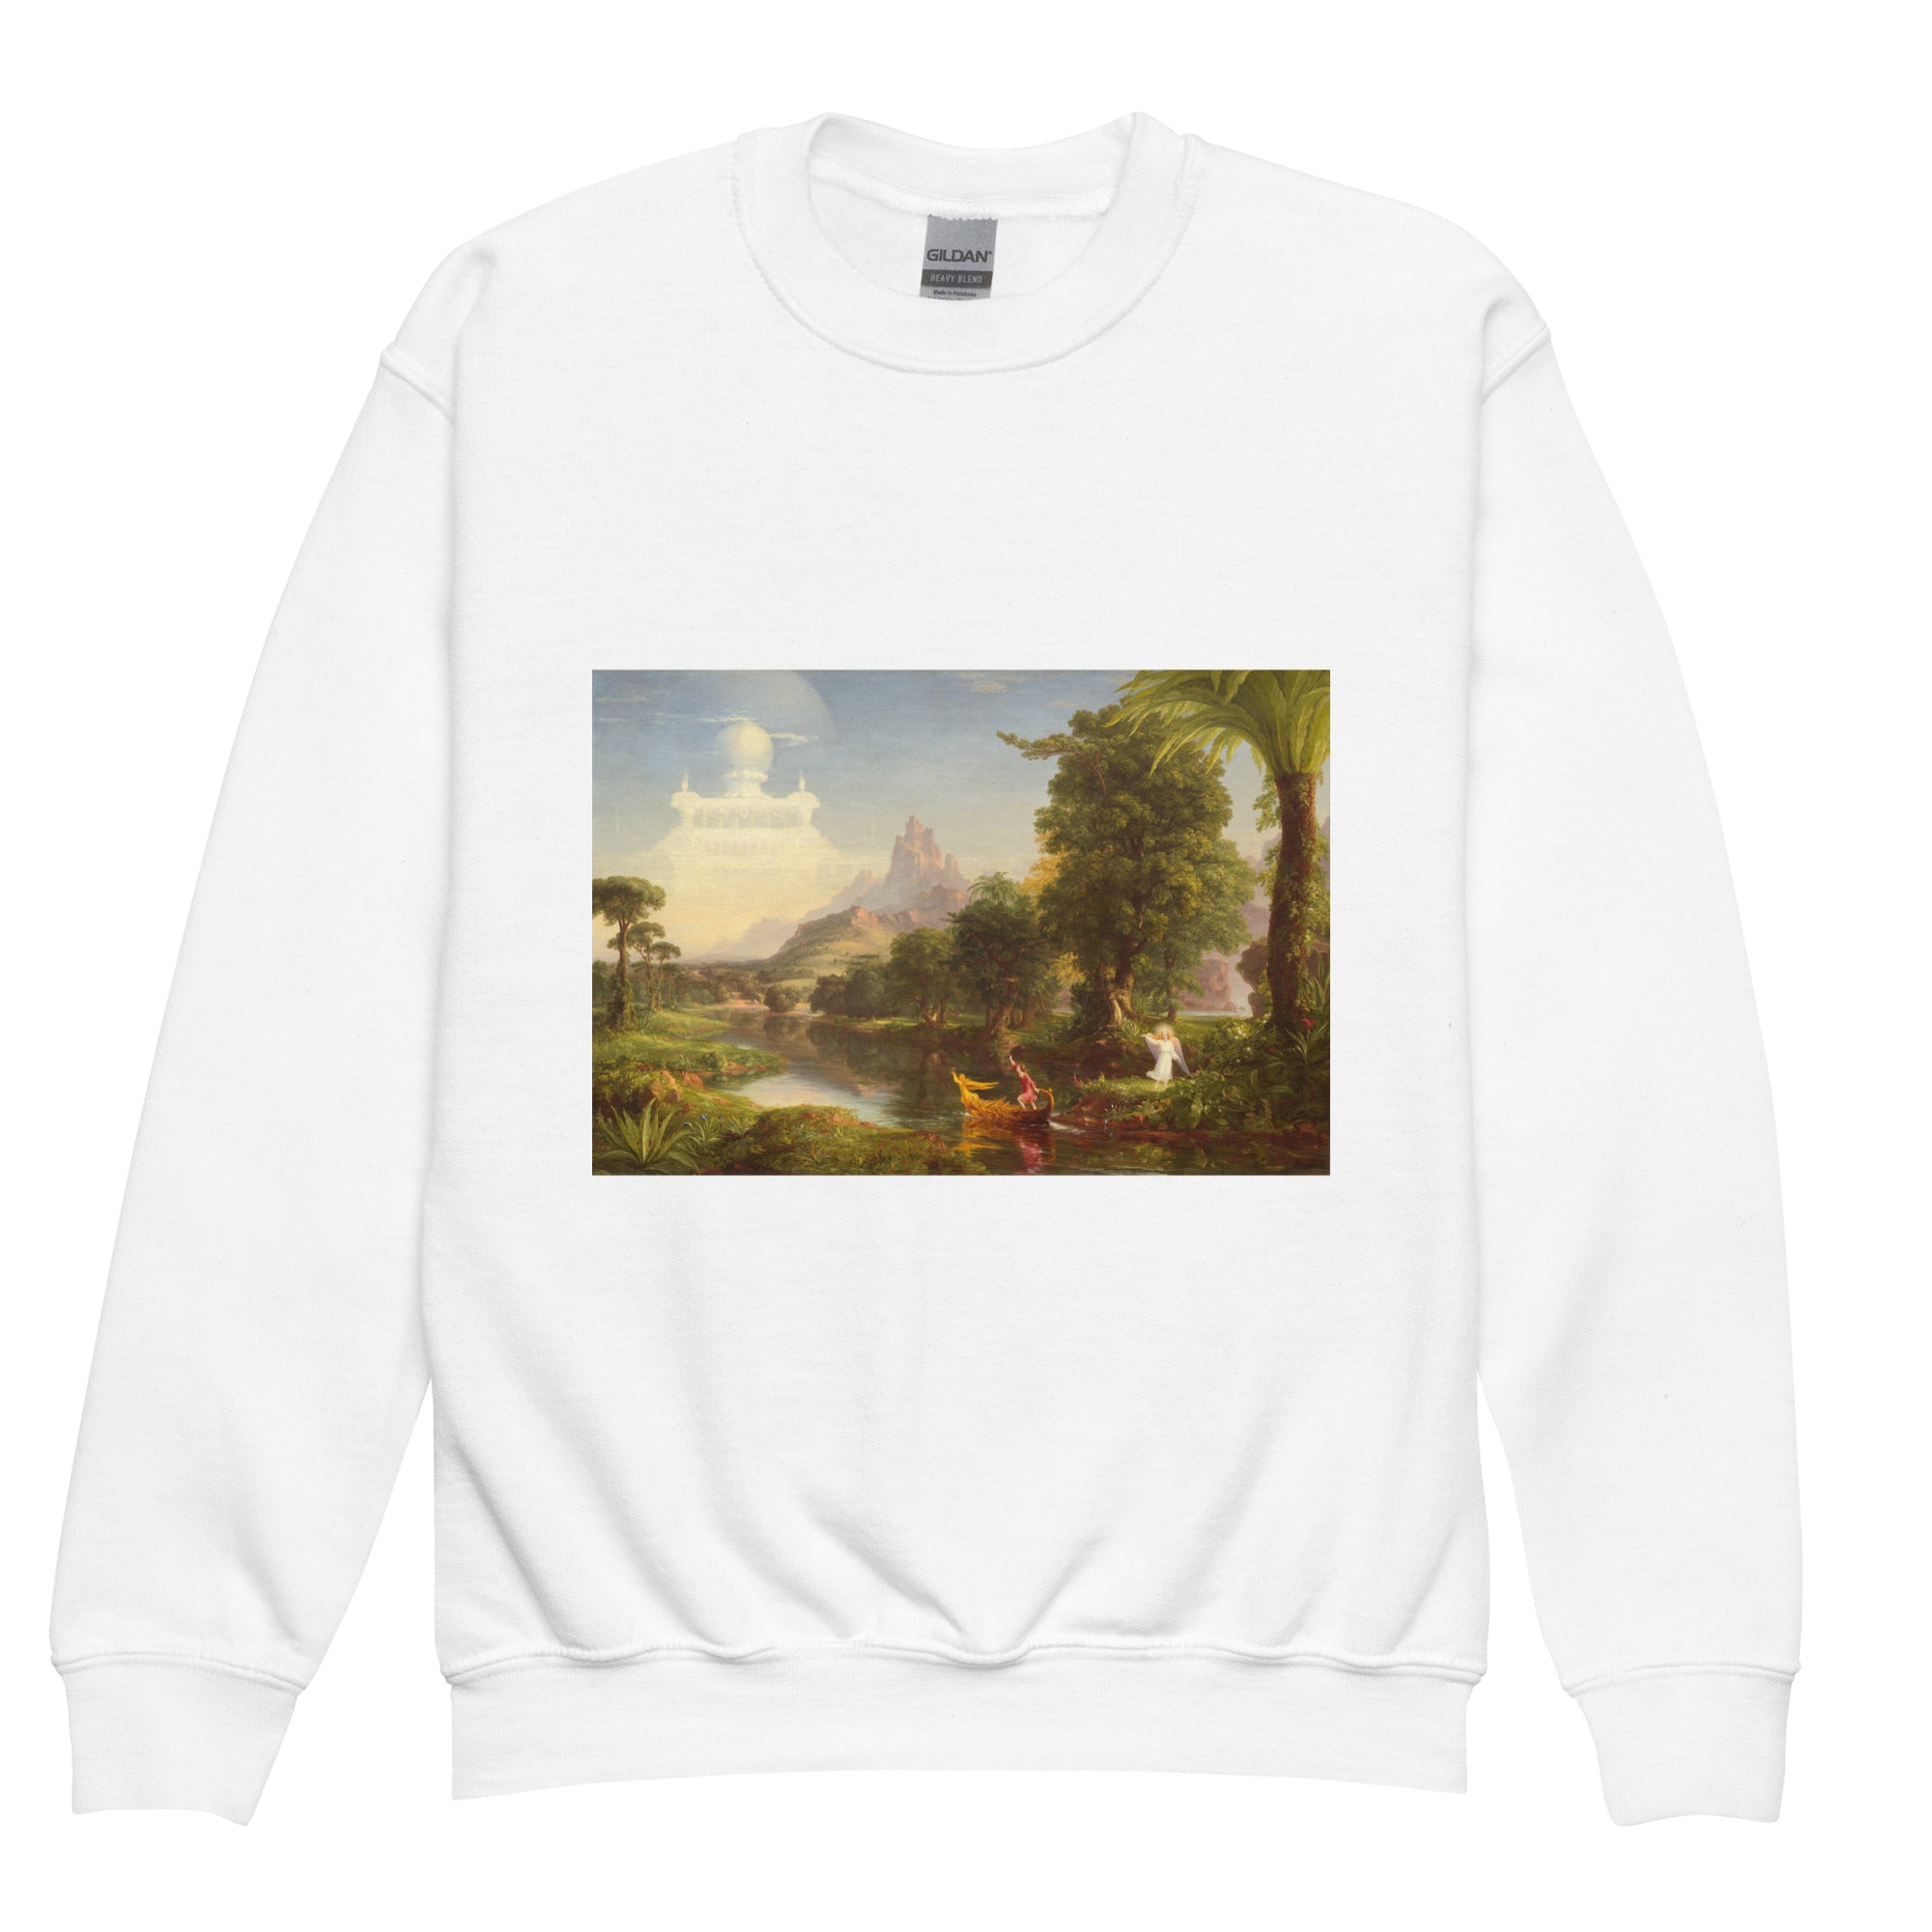 Thomas Cole 'The Voyage of Life: Youth' Famous Painting Crewneck Sweatshirt | Premium Youth Art Sweatshirt